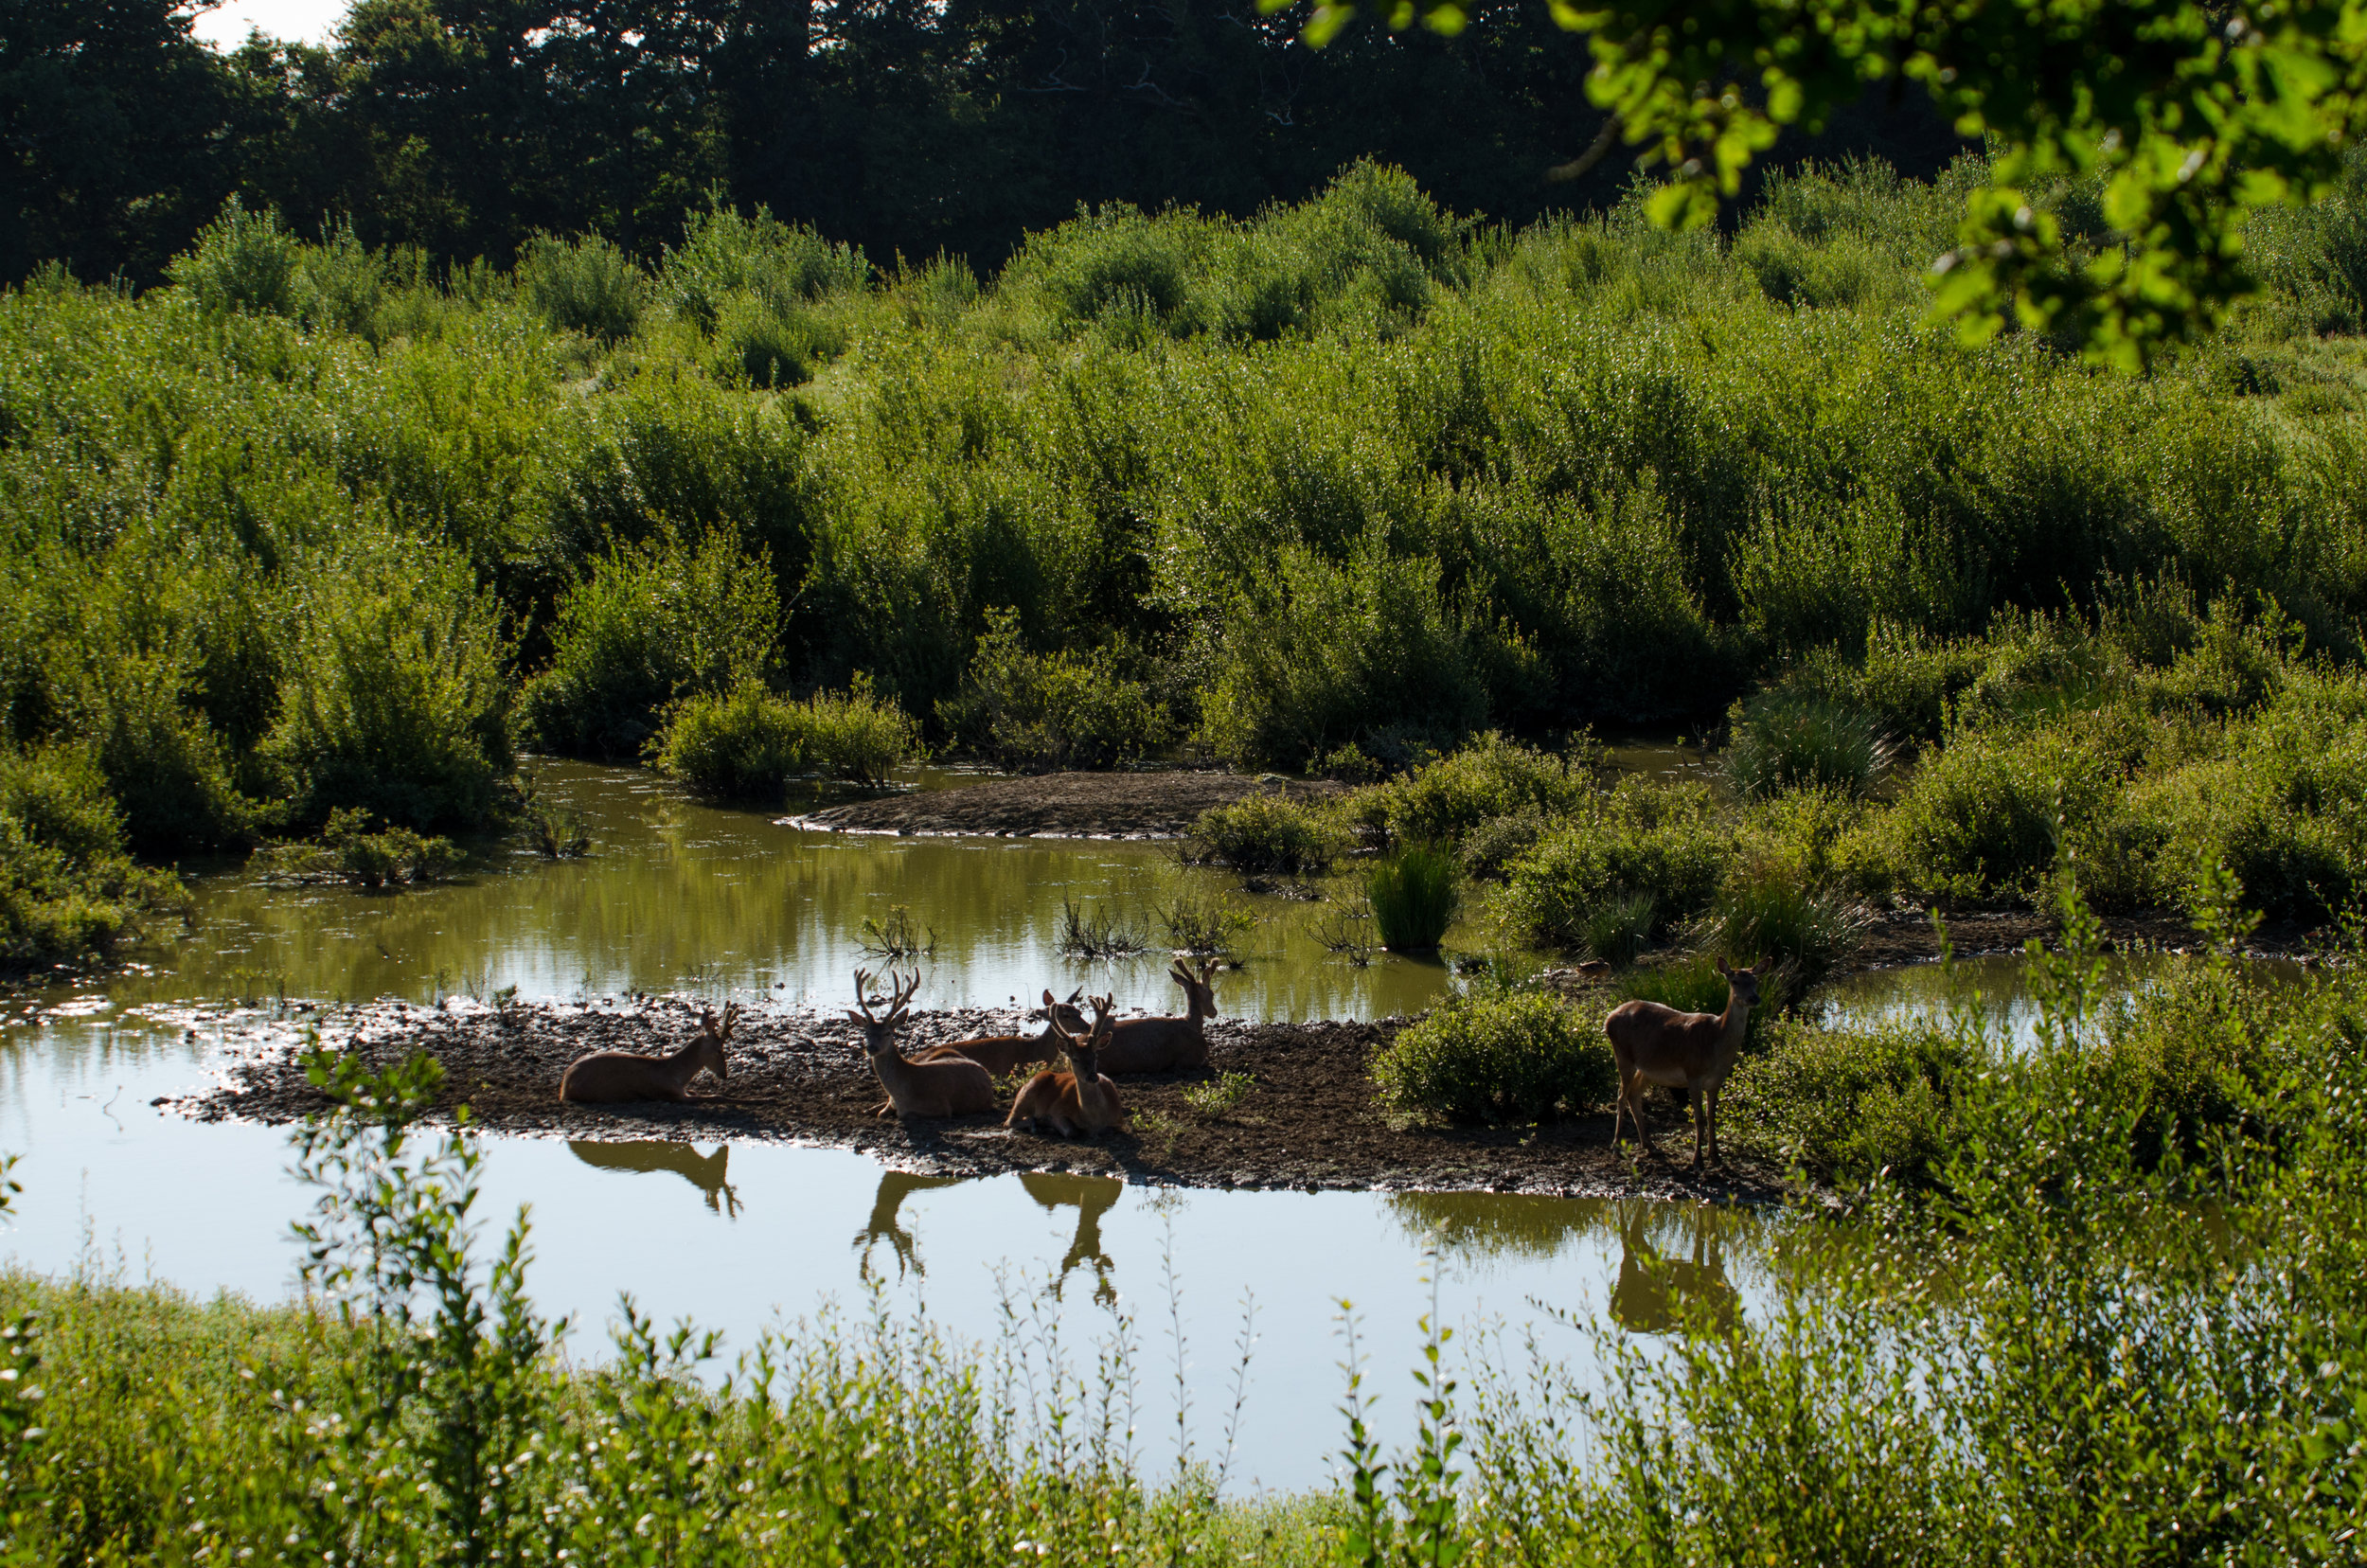  Deer by water in the rewilded 